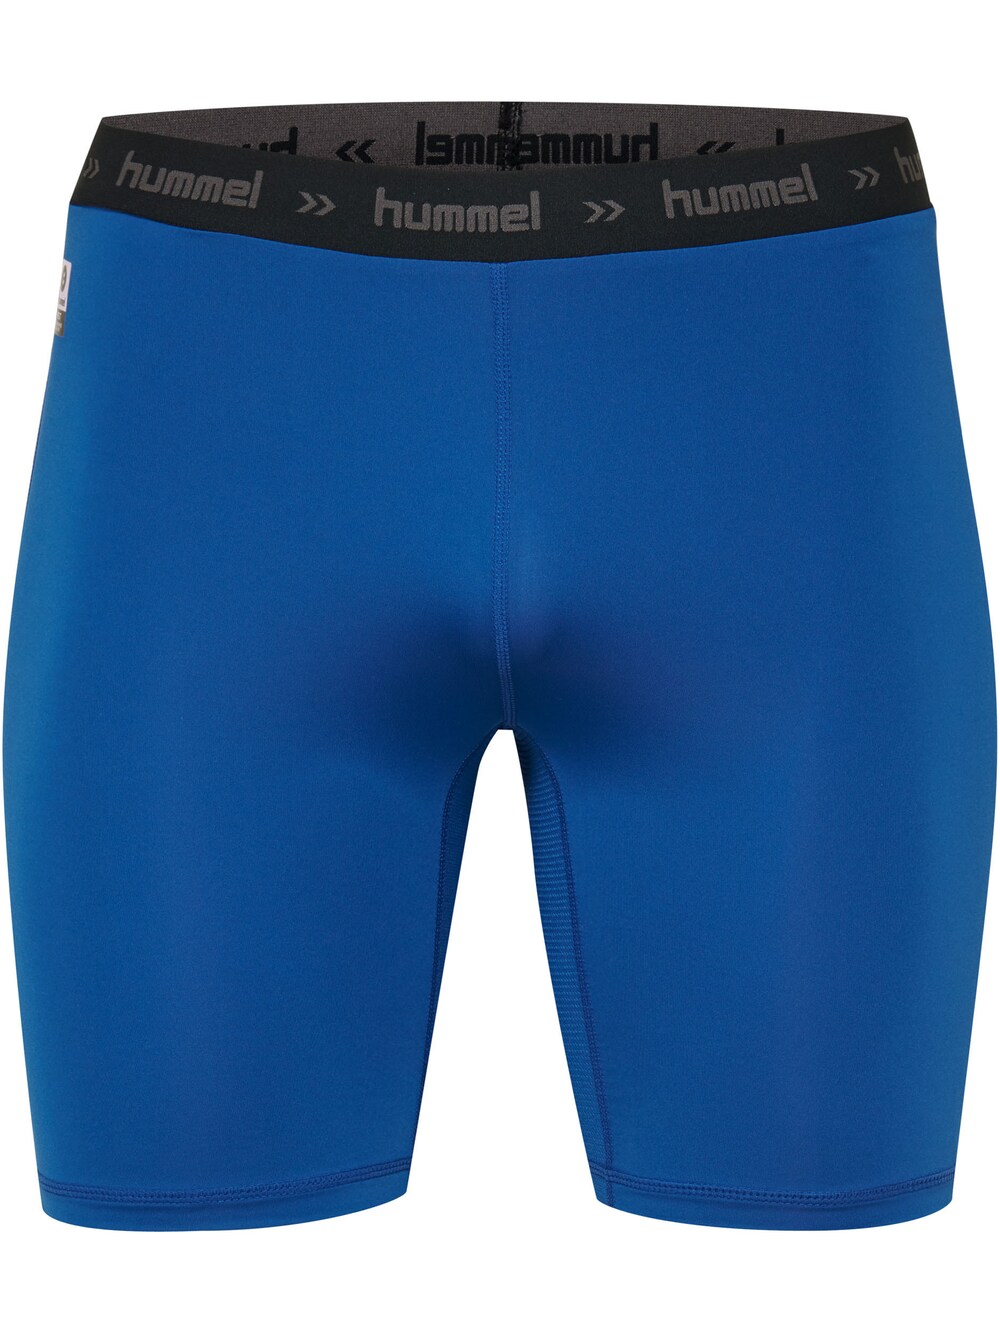 Узкие тренировочные брюки Hummel, горечавка